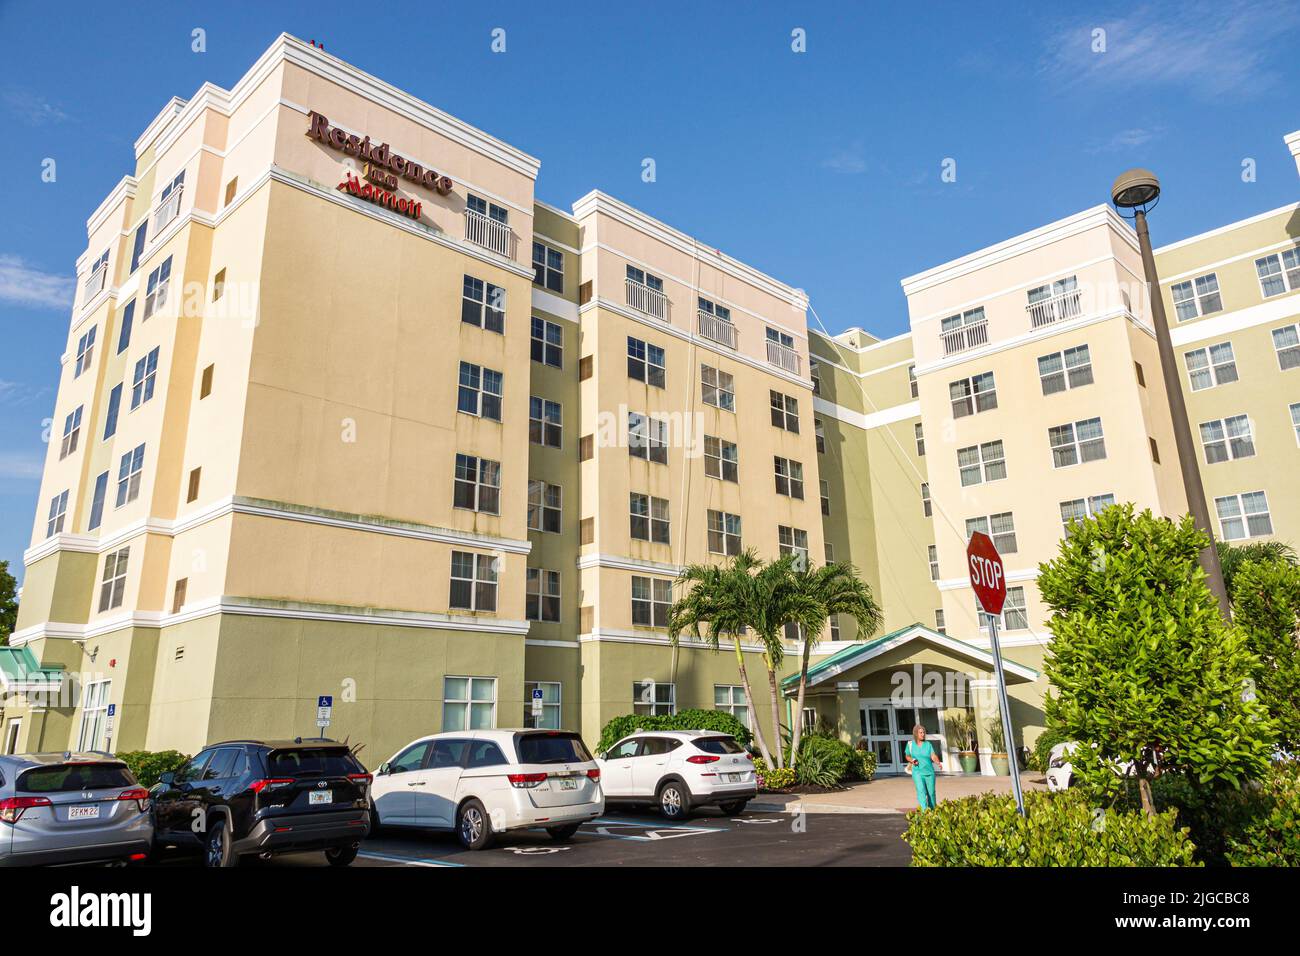 Fort Ft. Myers Florida, Residence Inn by Marriott Fort Myers Sanibel alojamiento hotel, exterior entrada frontal estacionamiento estacionamiento señal de estacionamiento Foto de stock